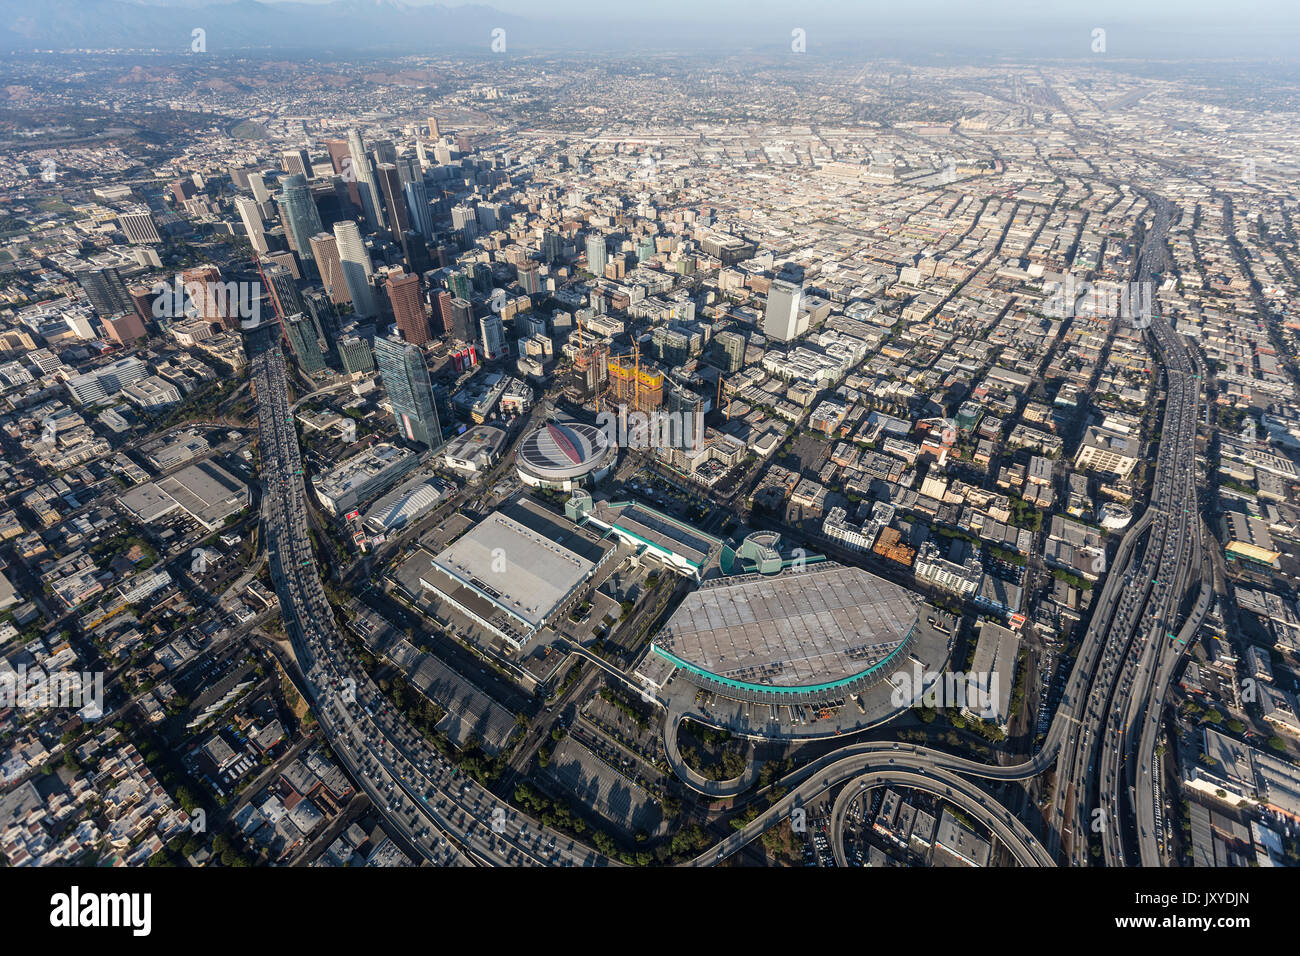 Los Angeles, Kalifornien, USA - 7. August 2017: Luftaufnahme von Convention Center Gebäude, Autobahnen und der Innenstadt von Türmen. Stockfoto